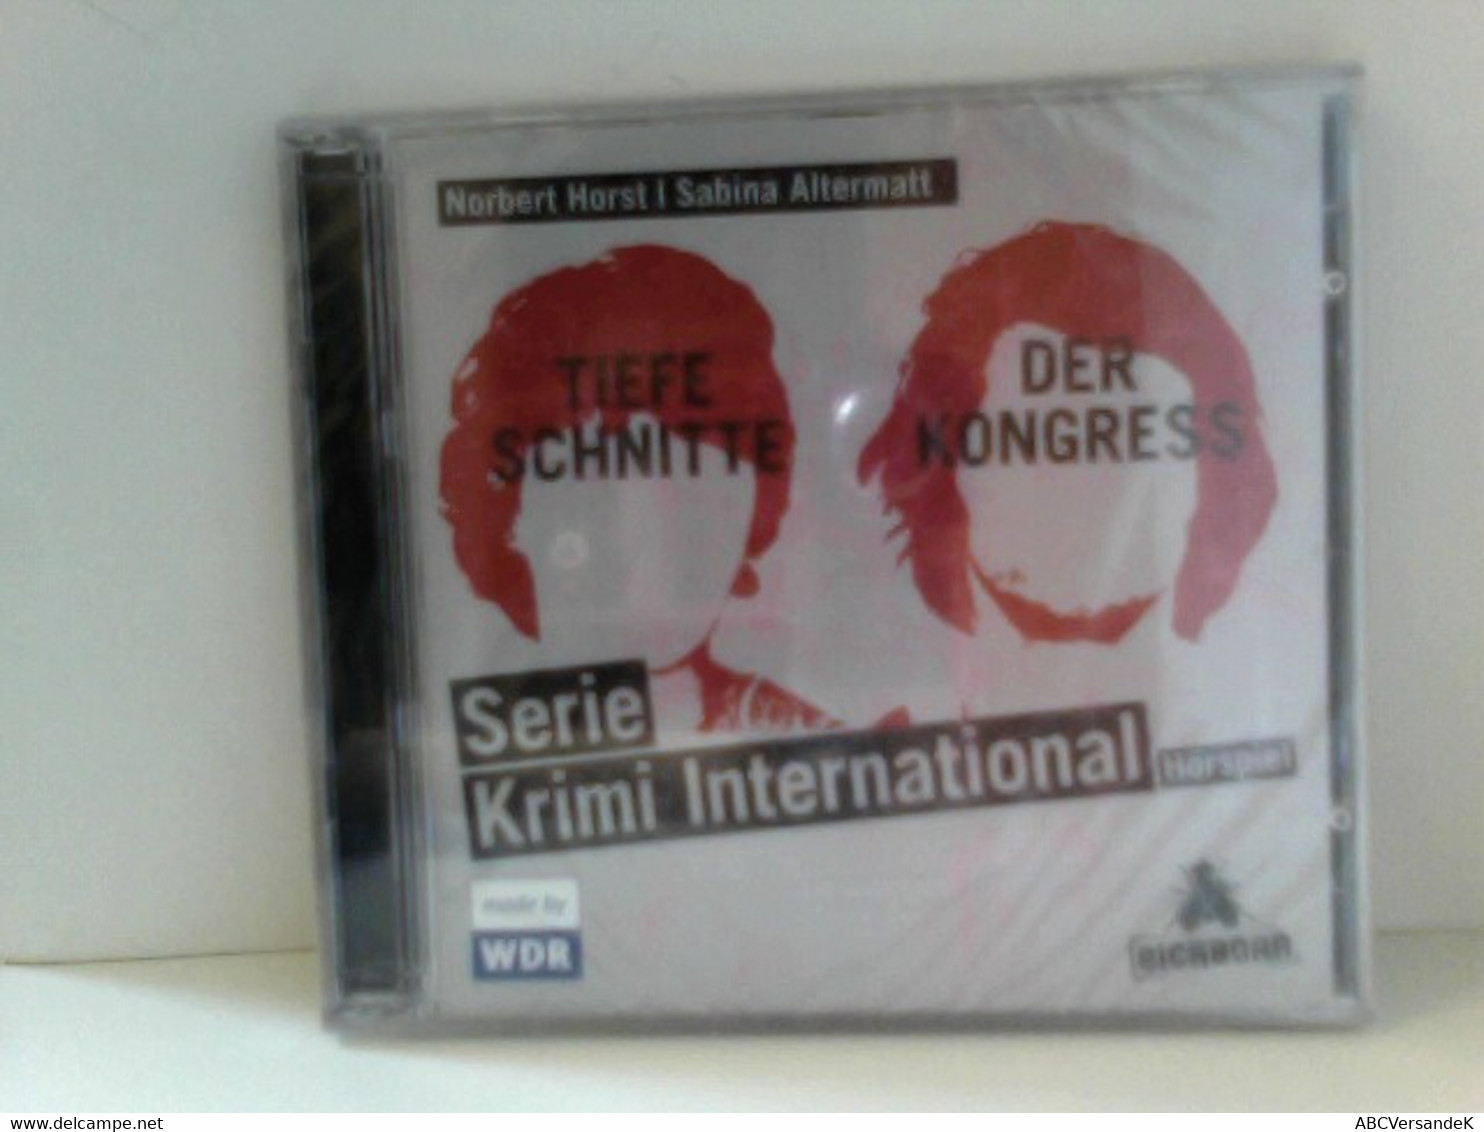 Serie Krimi International 3 Und 4: Tiefe Schnitte / Der Kongress - CD